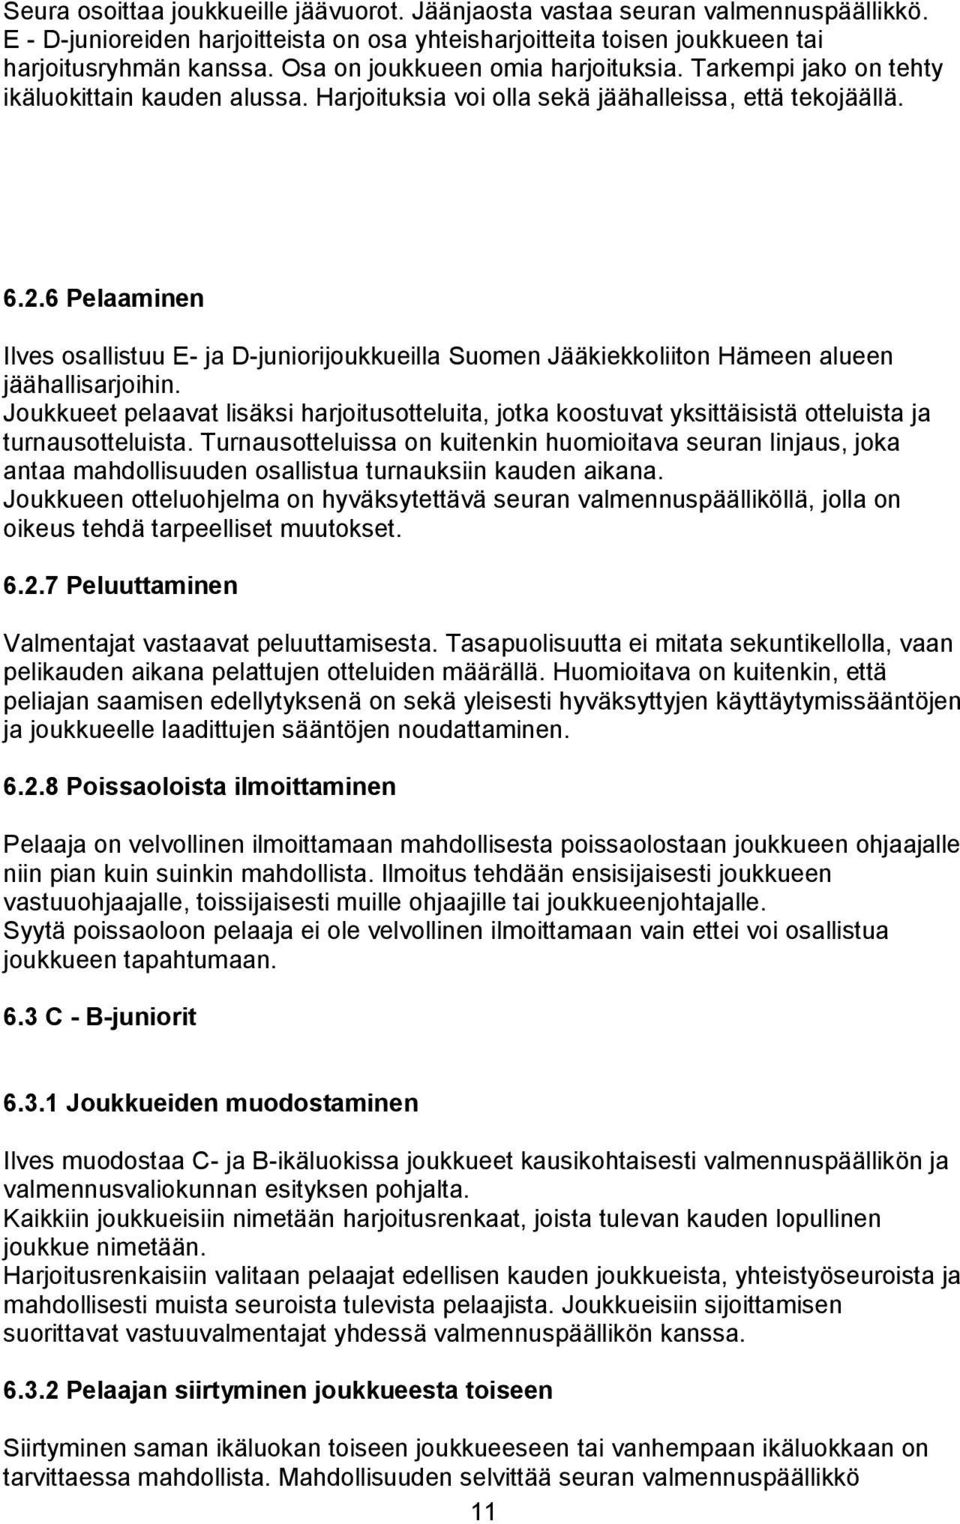 6 Pelaaminen Ilves osallistuu E- ja D-juniorijoukkueilla Suomen Jääkiekkoliiton Hämeen alueen jäähallisarjoihin.